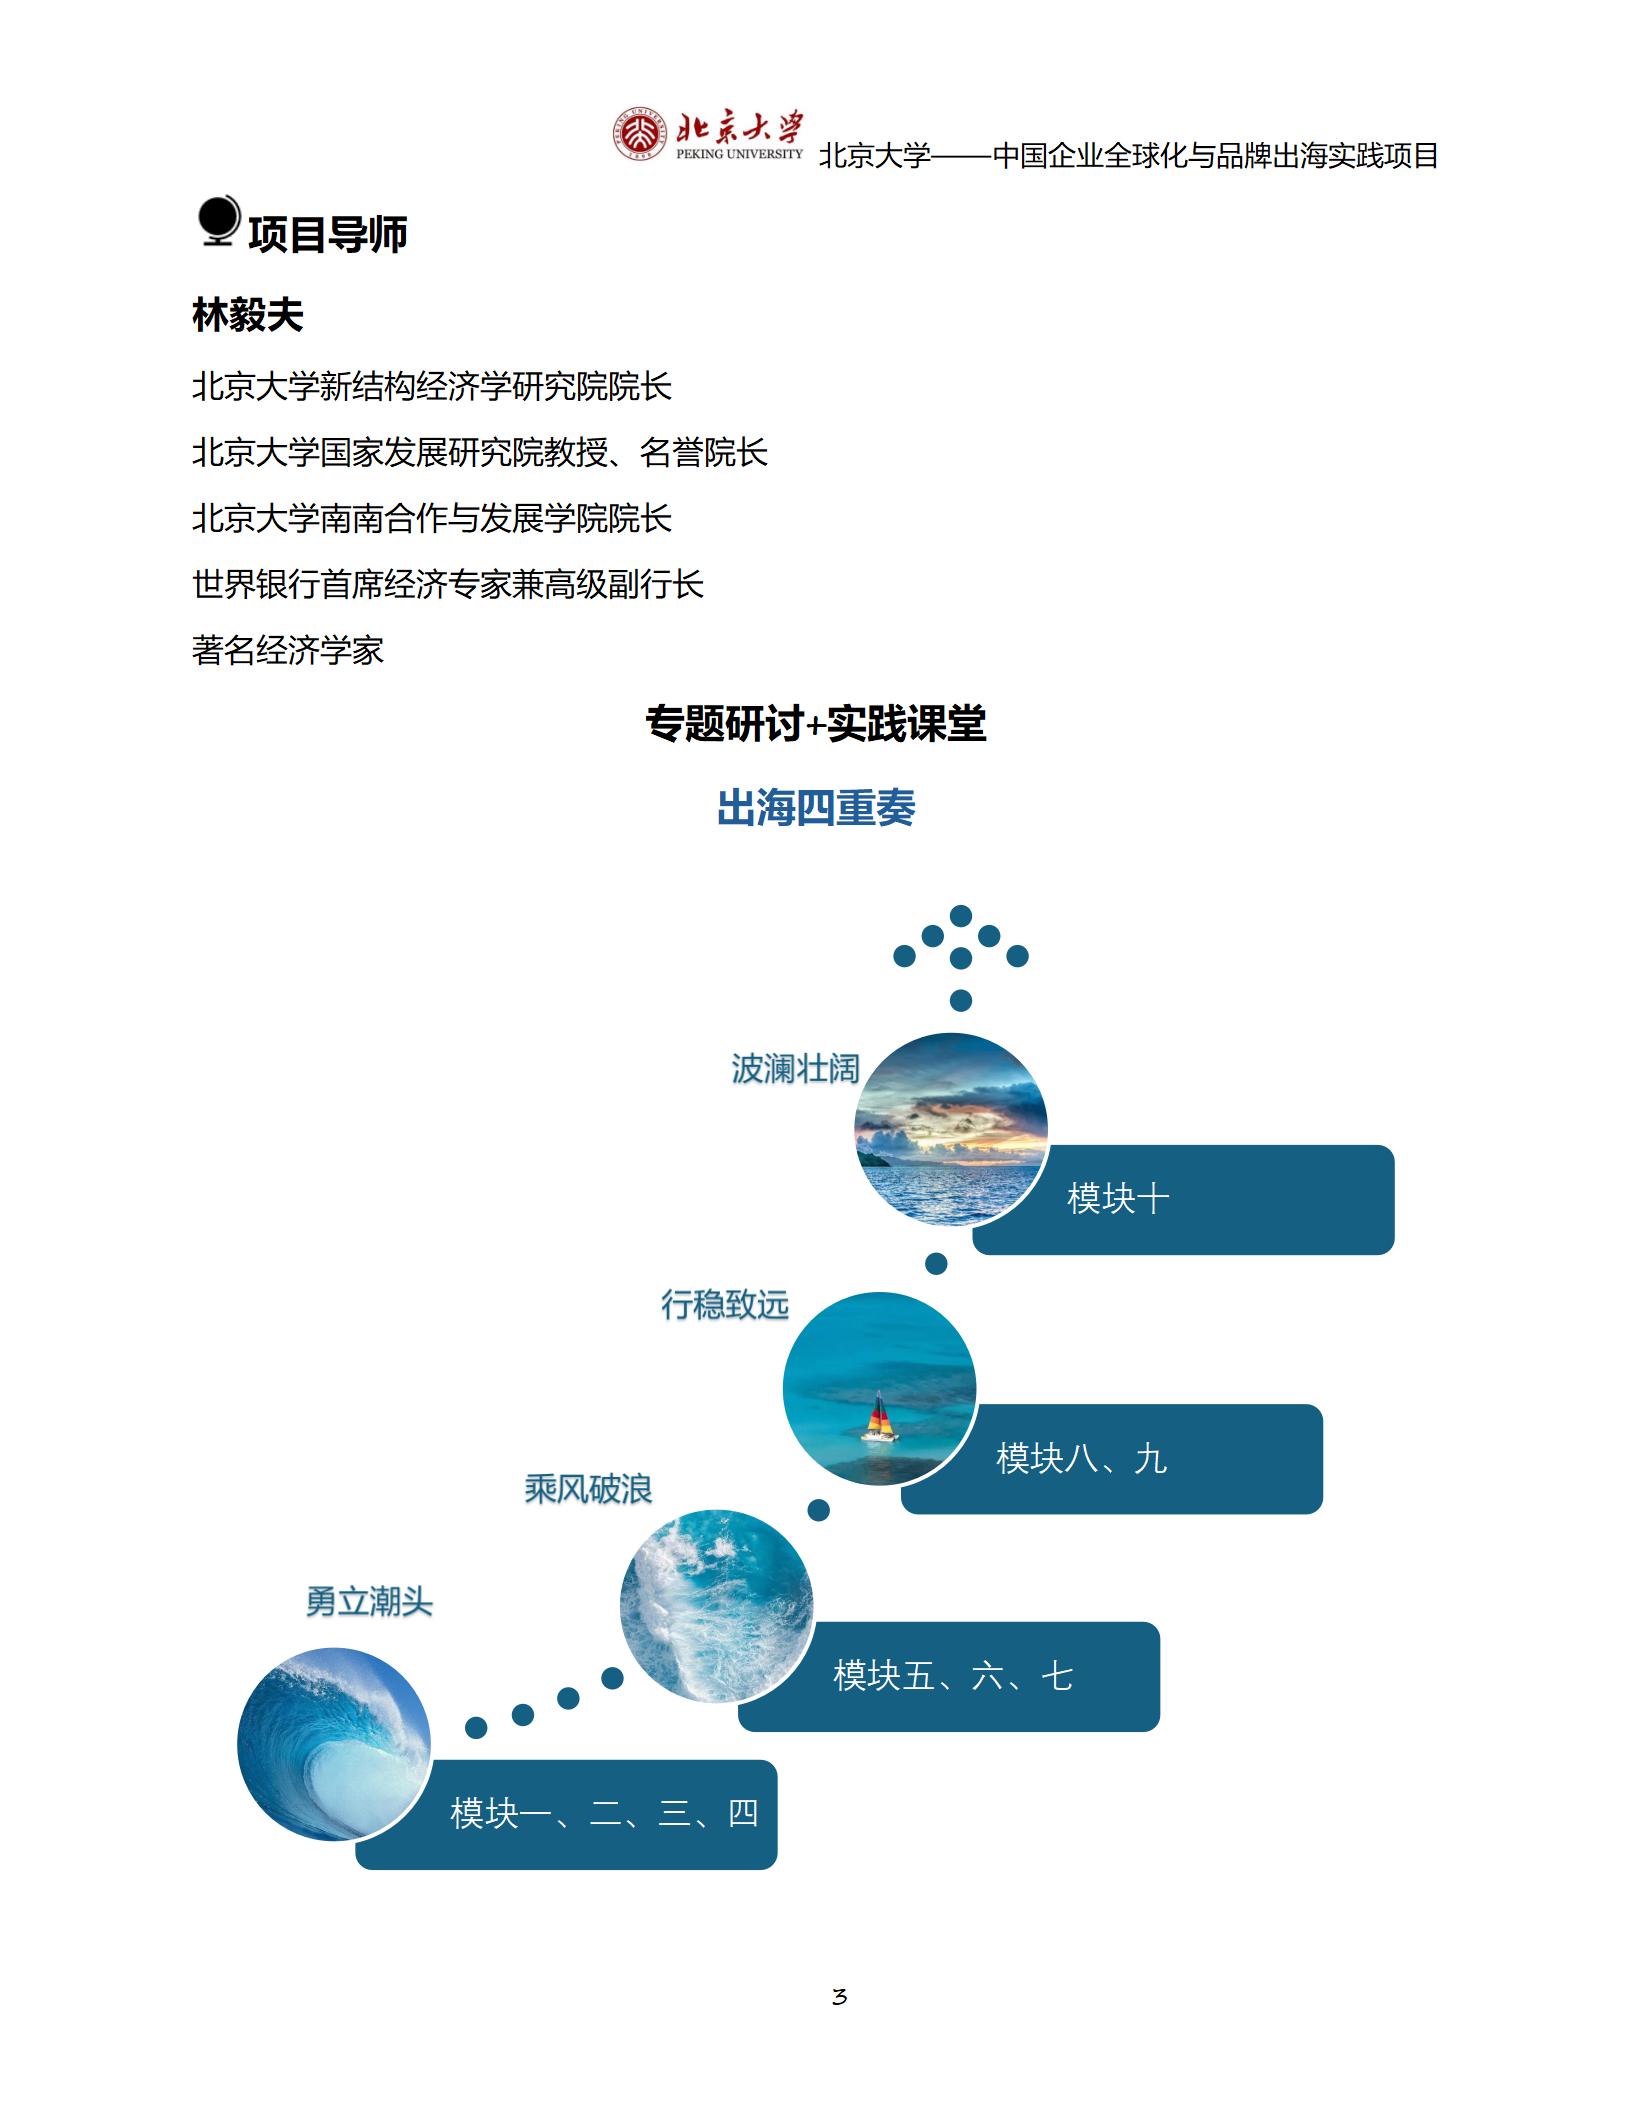 北京大学——中国企业全球化与品牌出海实践项目(2)_03.jpg